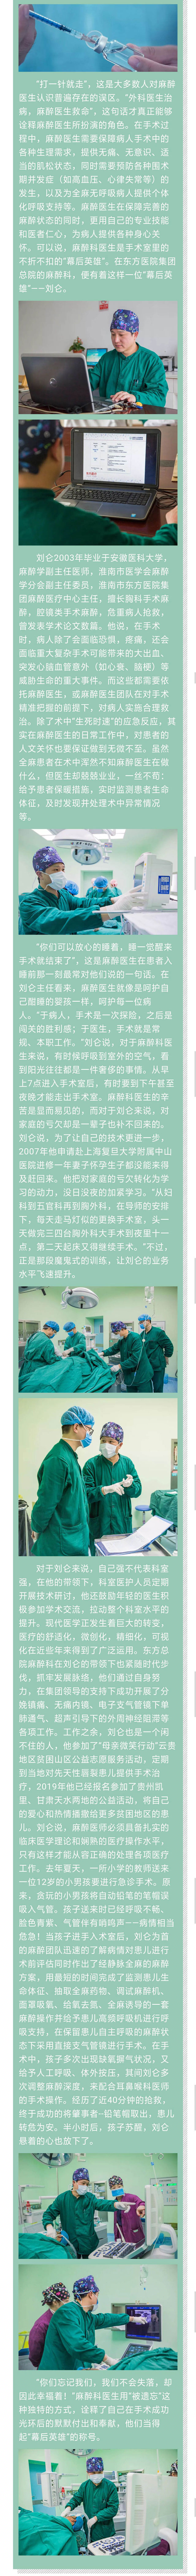 手術室裡的“幕後英雄”——專訪東方醫院集團總院麻醉科主任劉侖